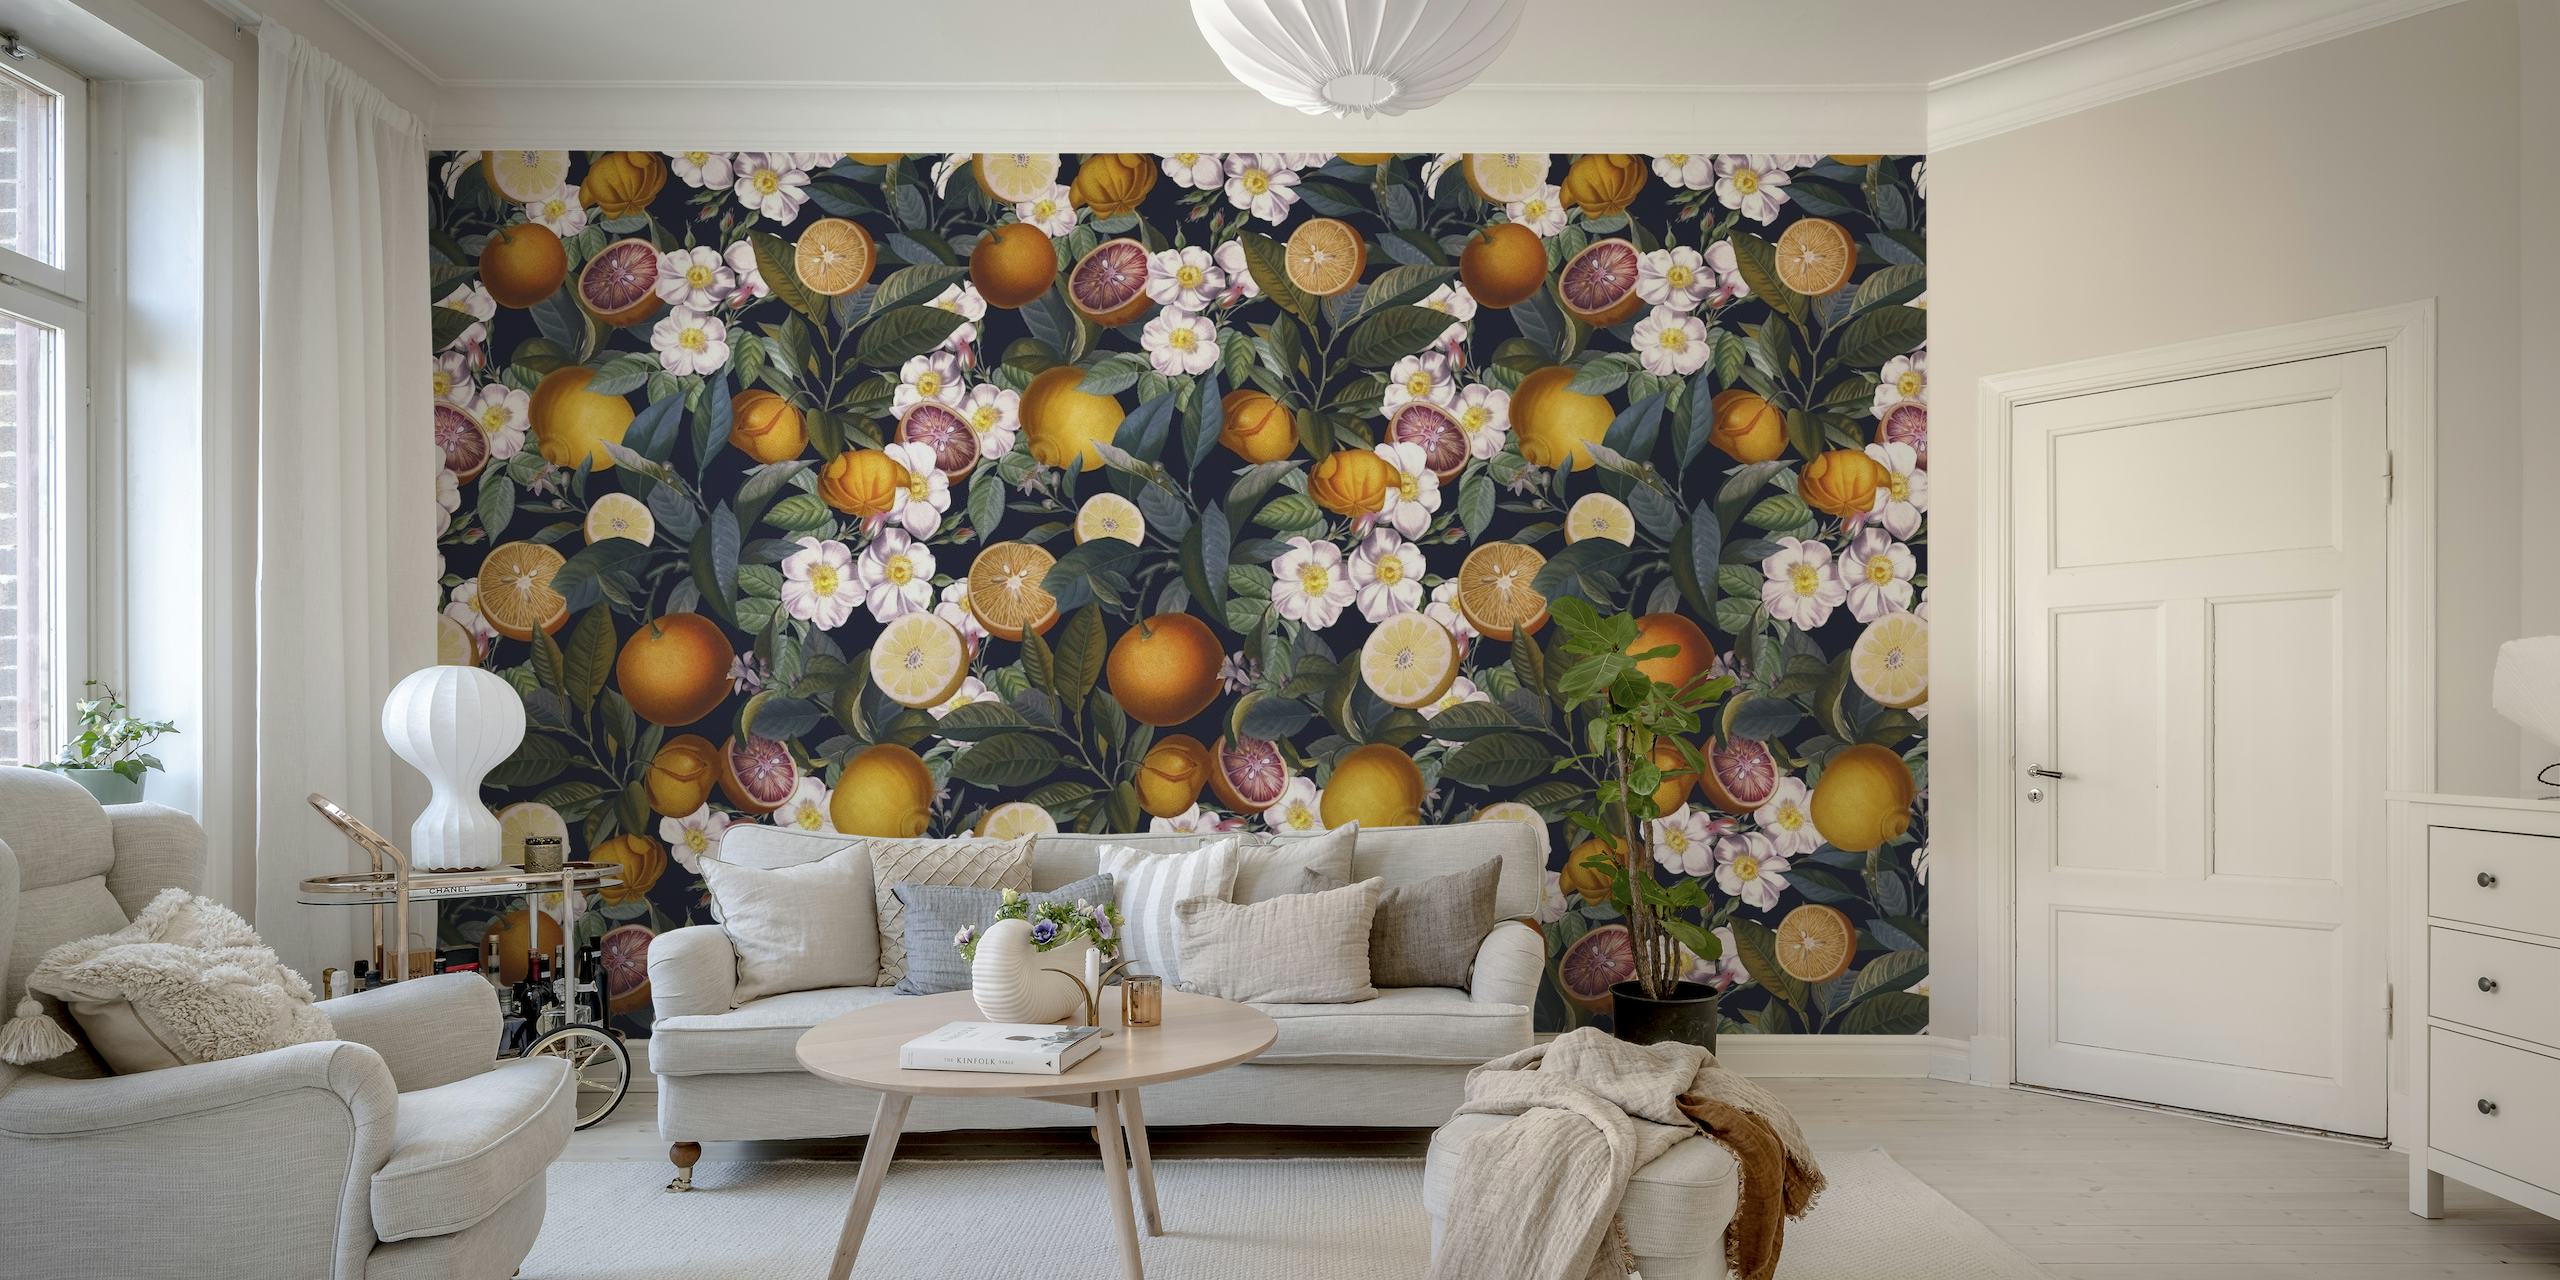 Een fotobehang genaamd Juicy Lemons - Night met een patroon van rijpe citroenen en bloemen op een donkere achtergrond